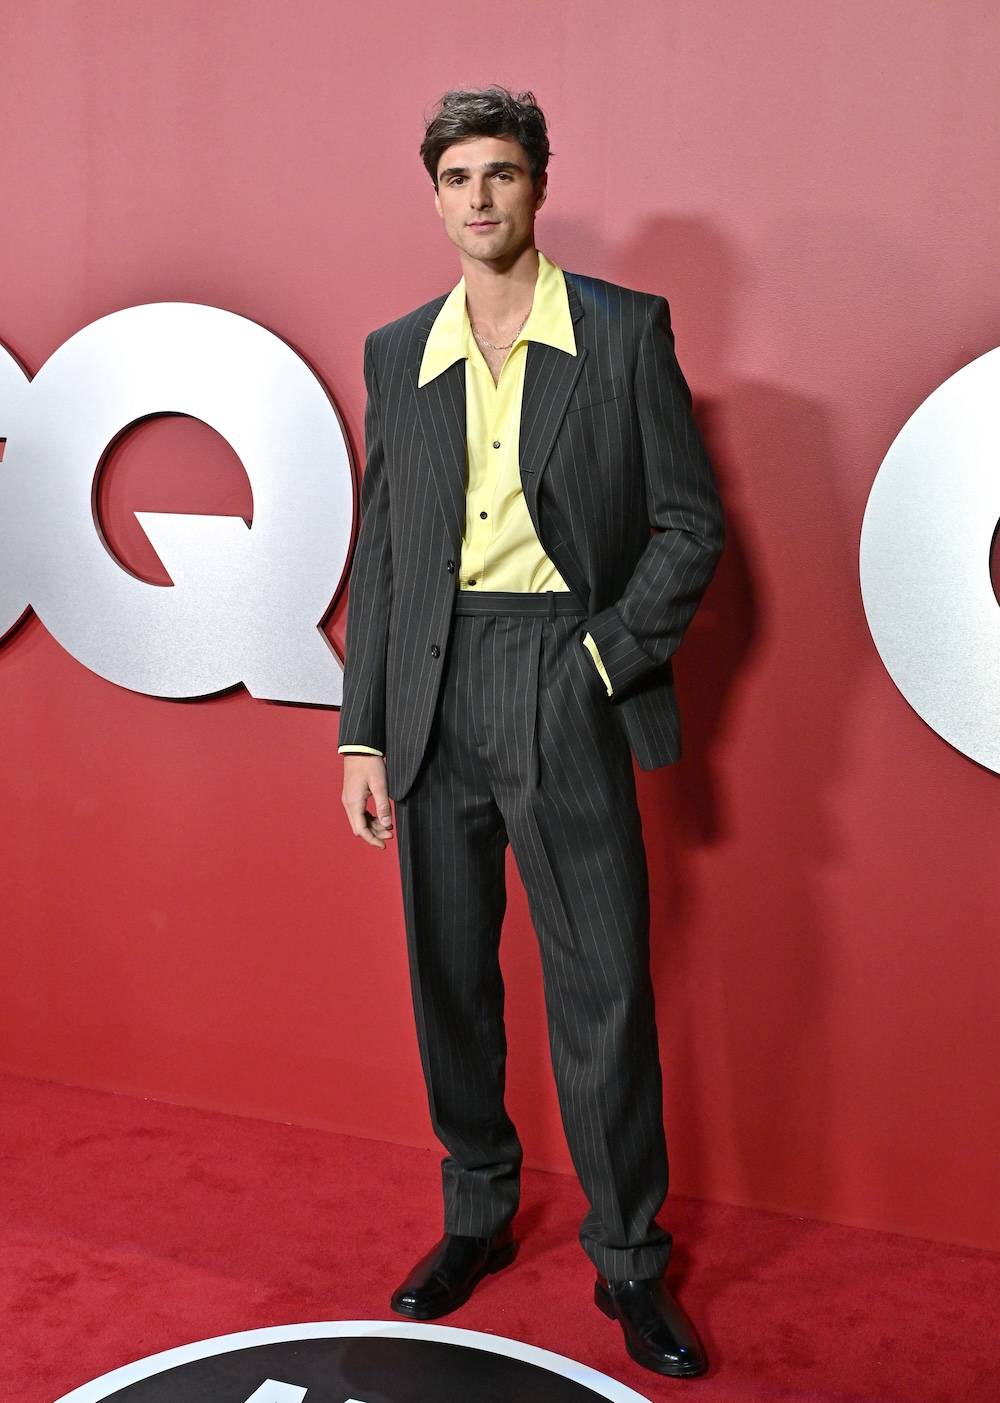 Związek Jacoba Elordiego z modą sięga 2022 roku, kiedy aktor został twarzą kampanii Hugo Boss. Dziś młody gwiazdor zasiada w pierwszych rzędach najważniejszych pokazów. (Fot. Getty Images)